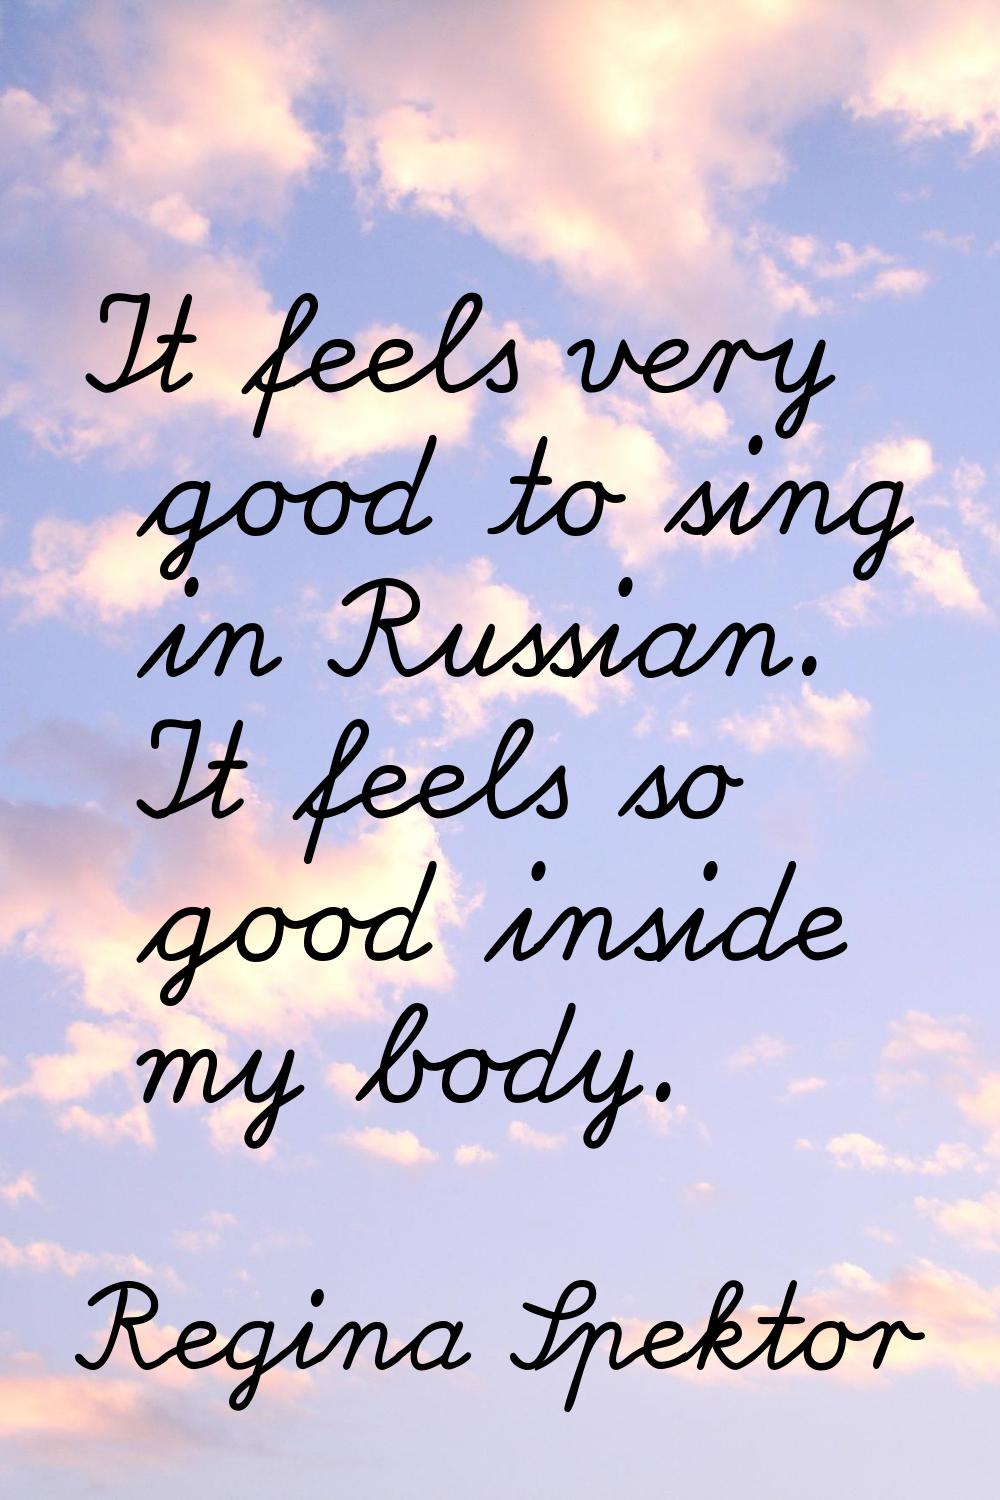 It feels very good to sing in Russian. It feels so good inside my body.